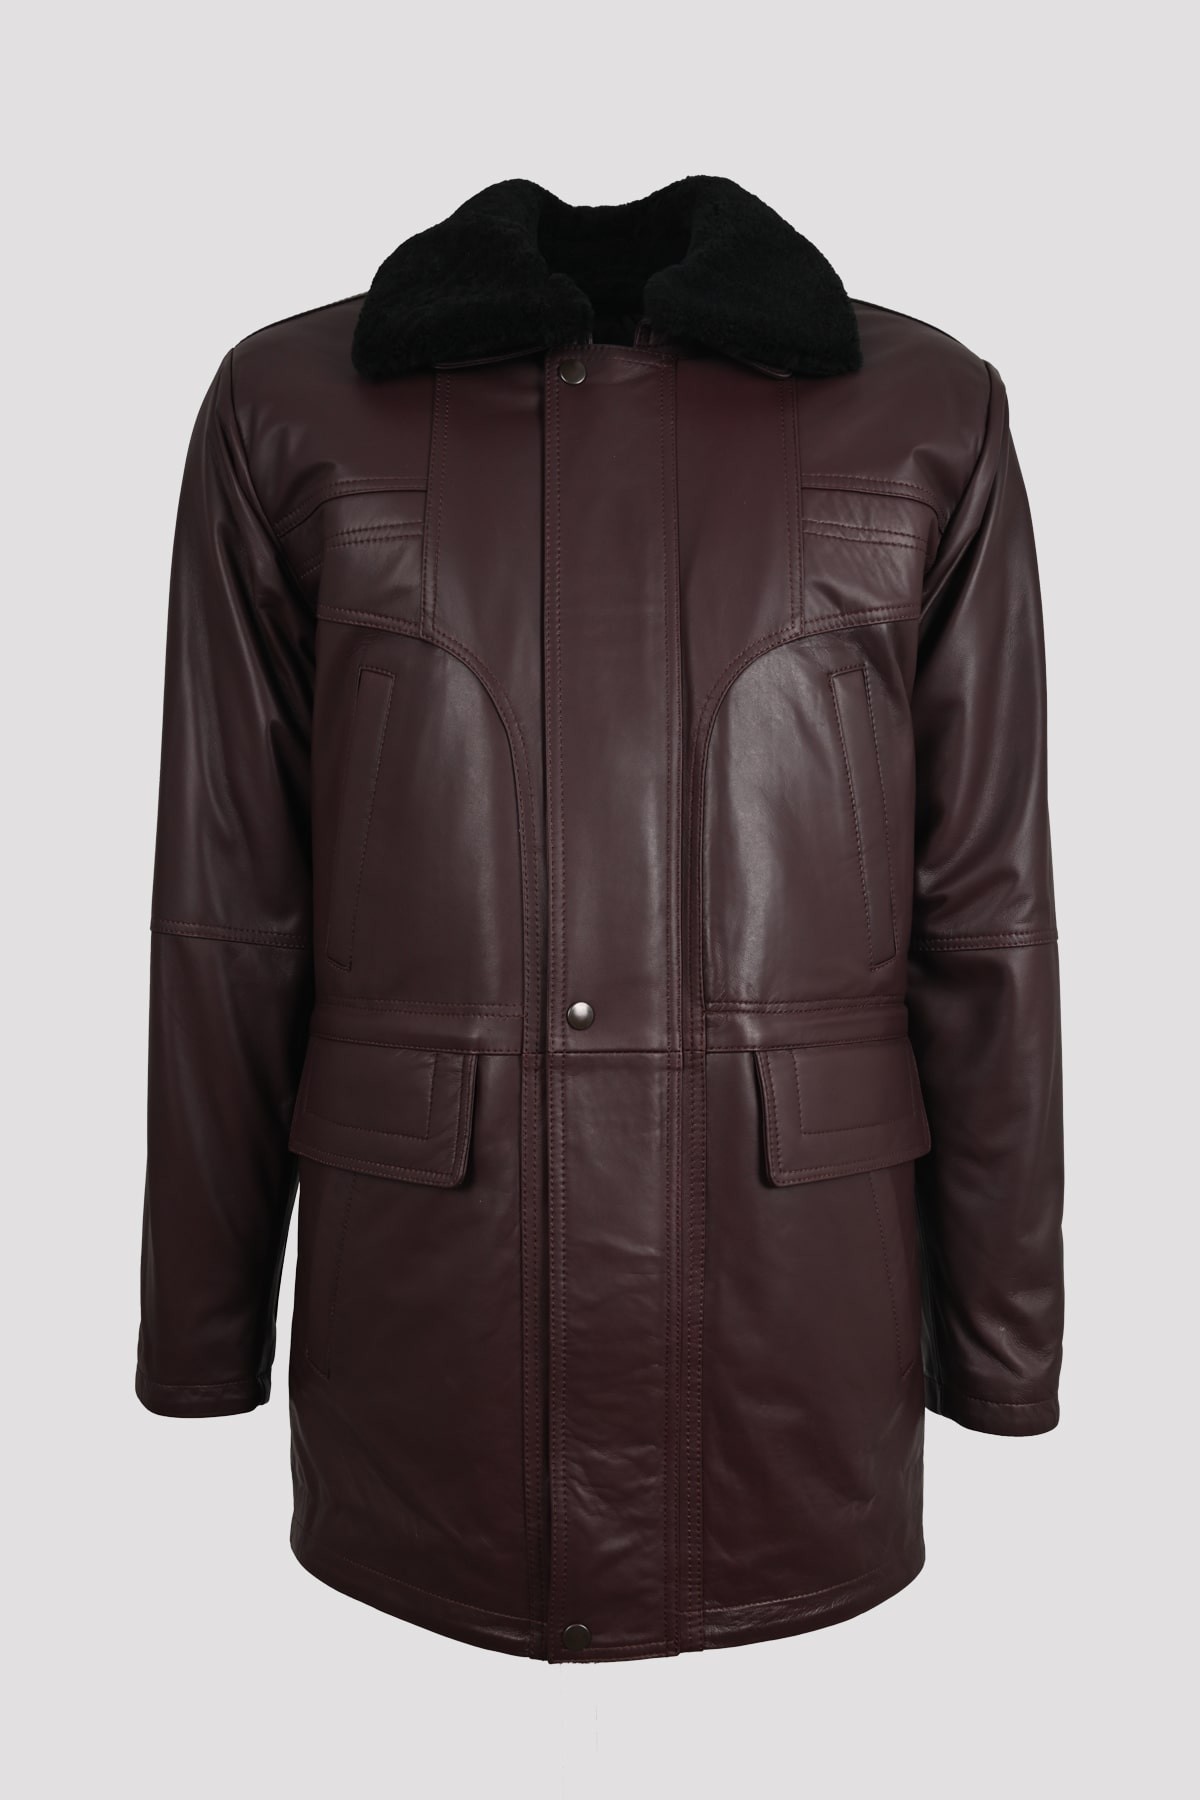 bordo leather coat mens Tarkan